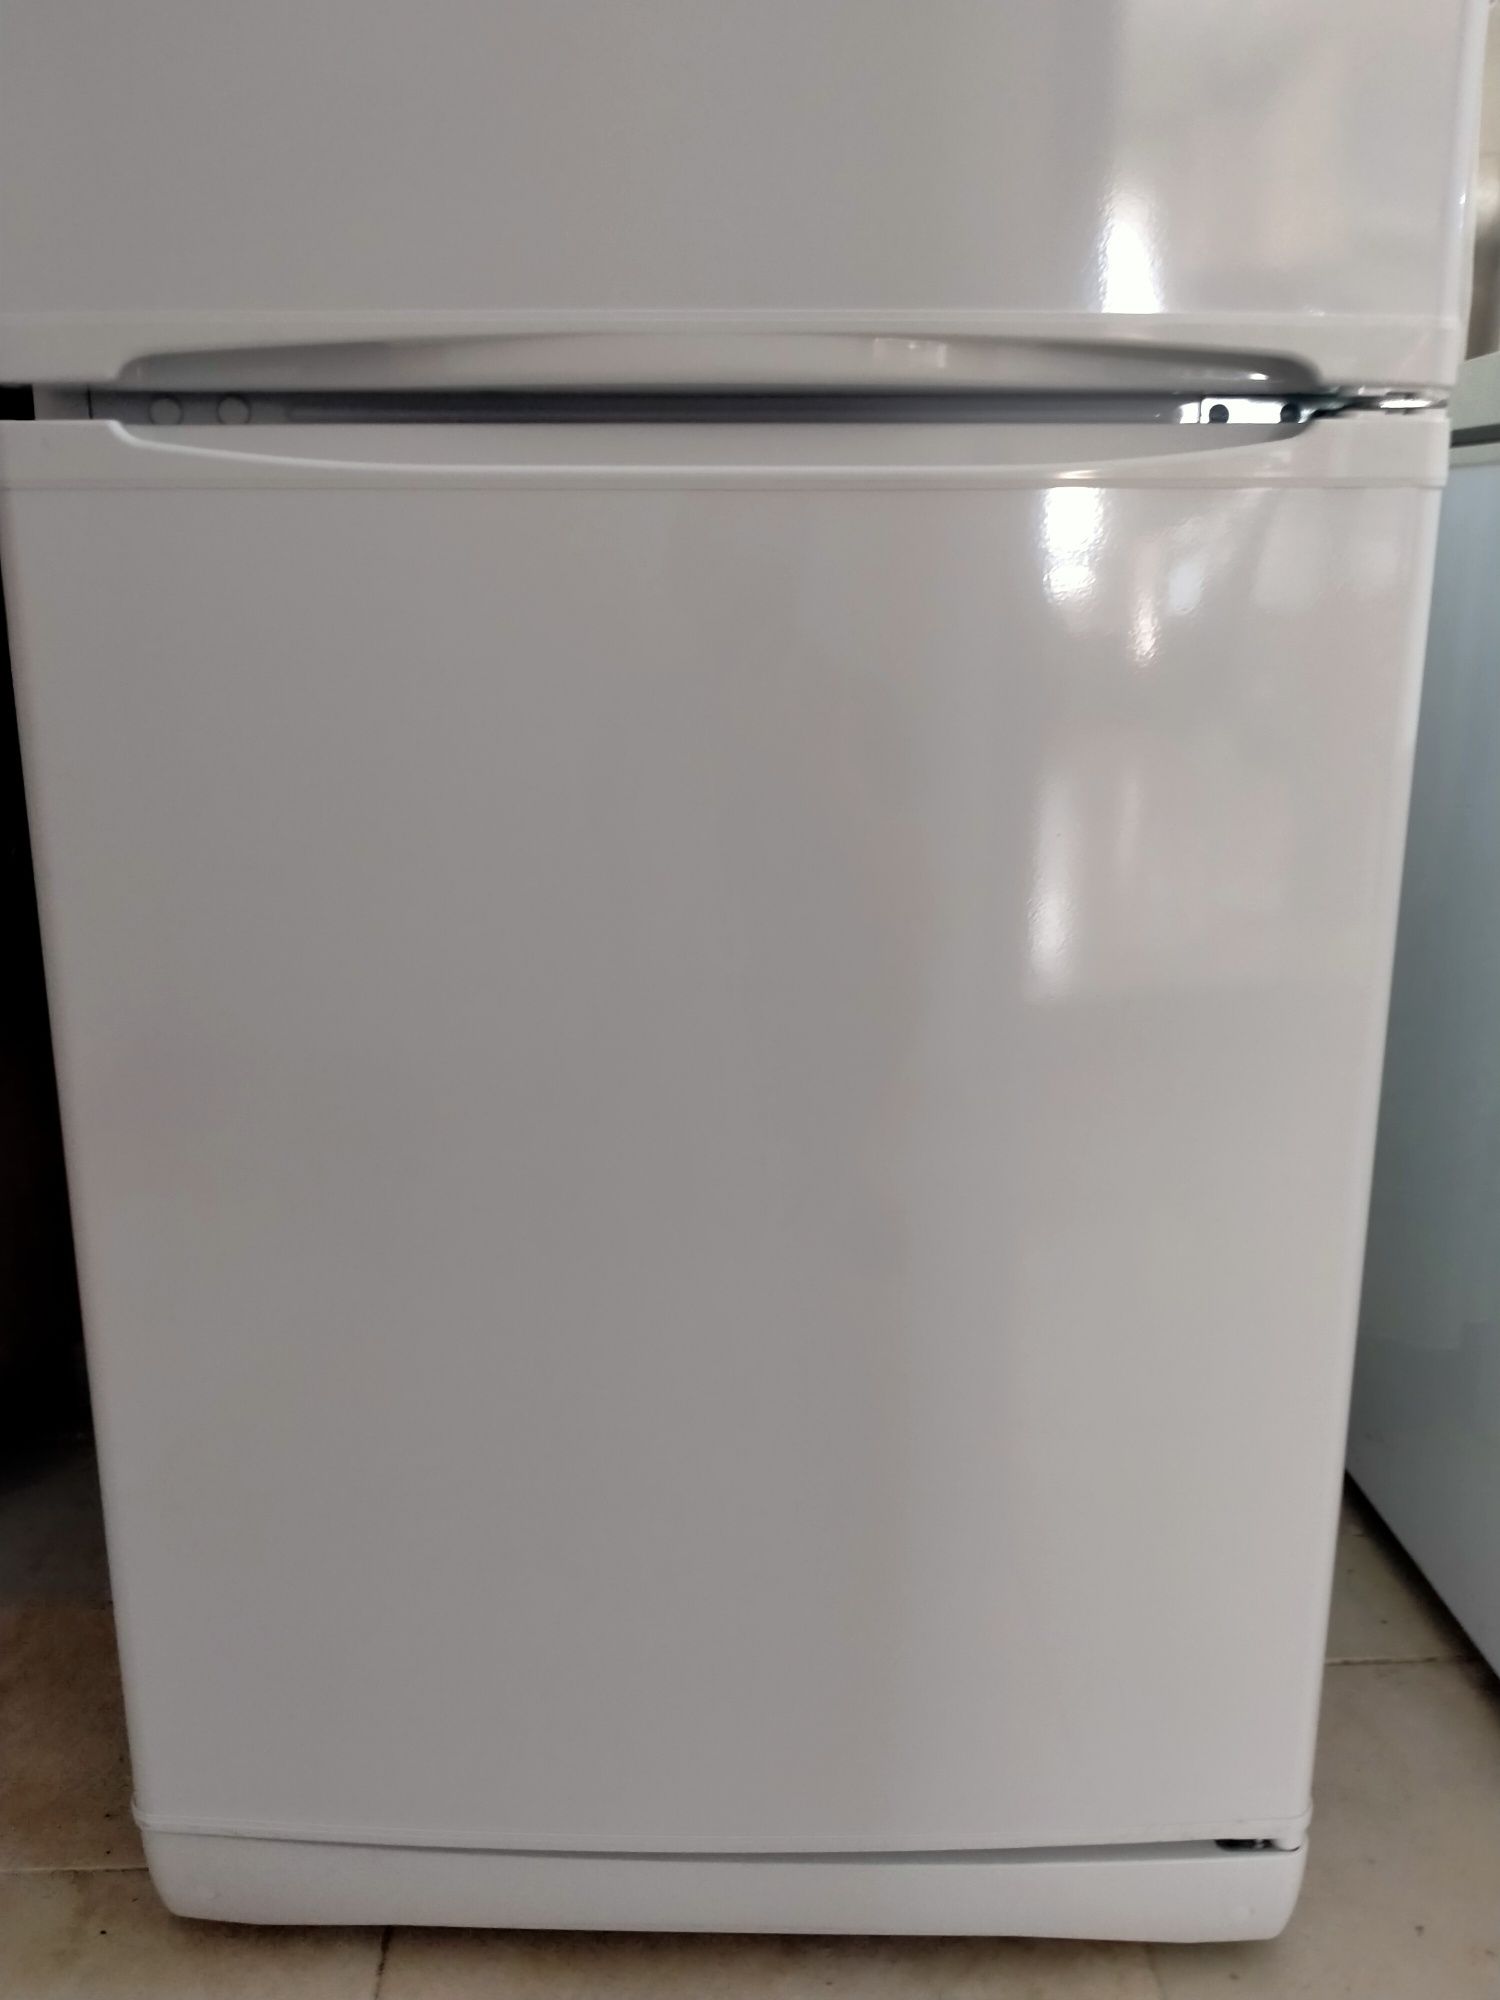 Продам холодильник Индезит новый покупал для себя не понадобился